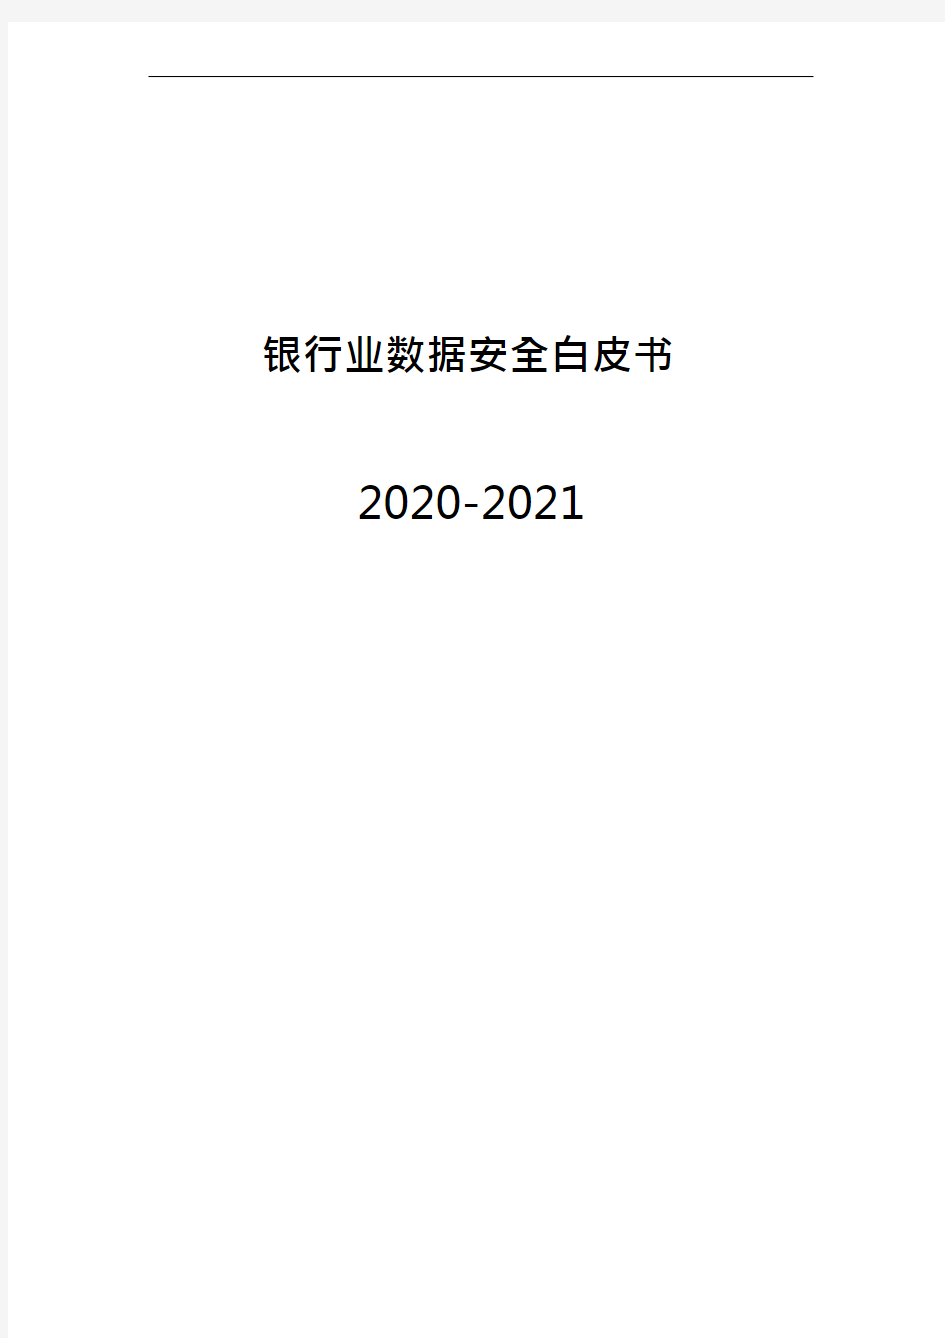 2020-2021年银行业数据安全白皮书